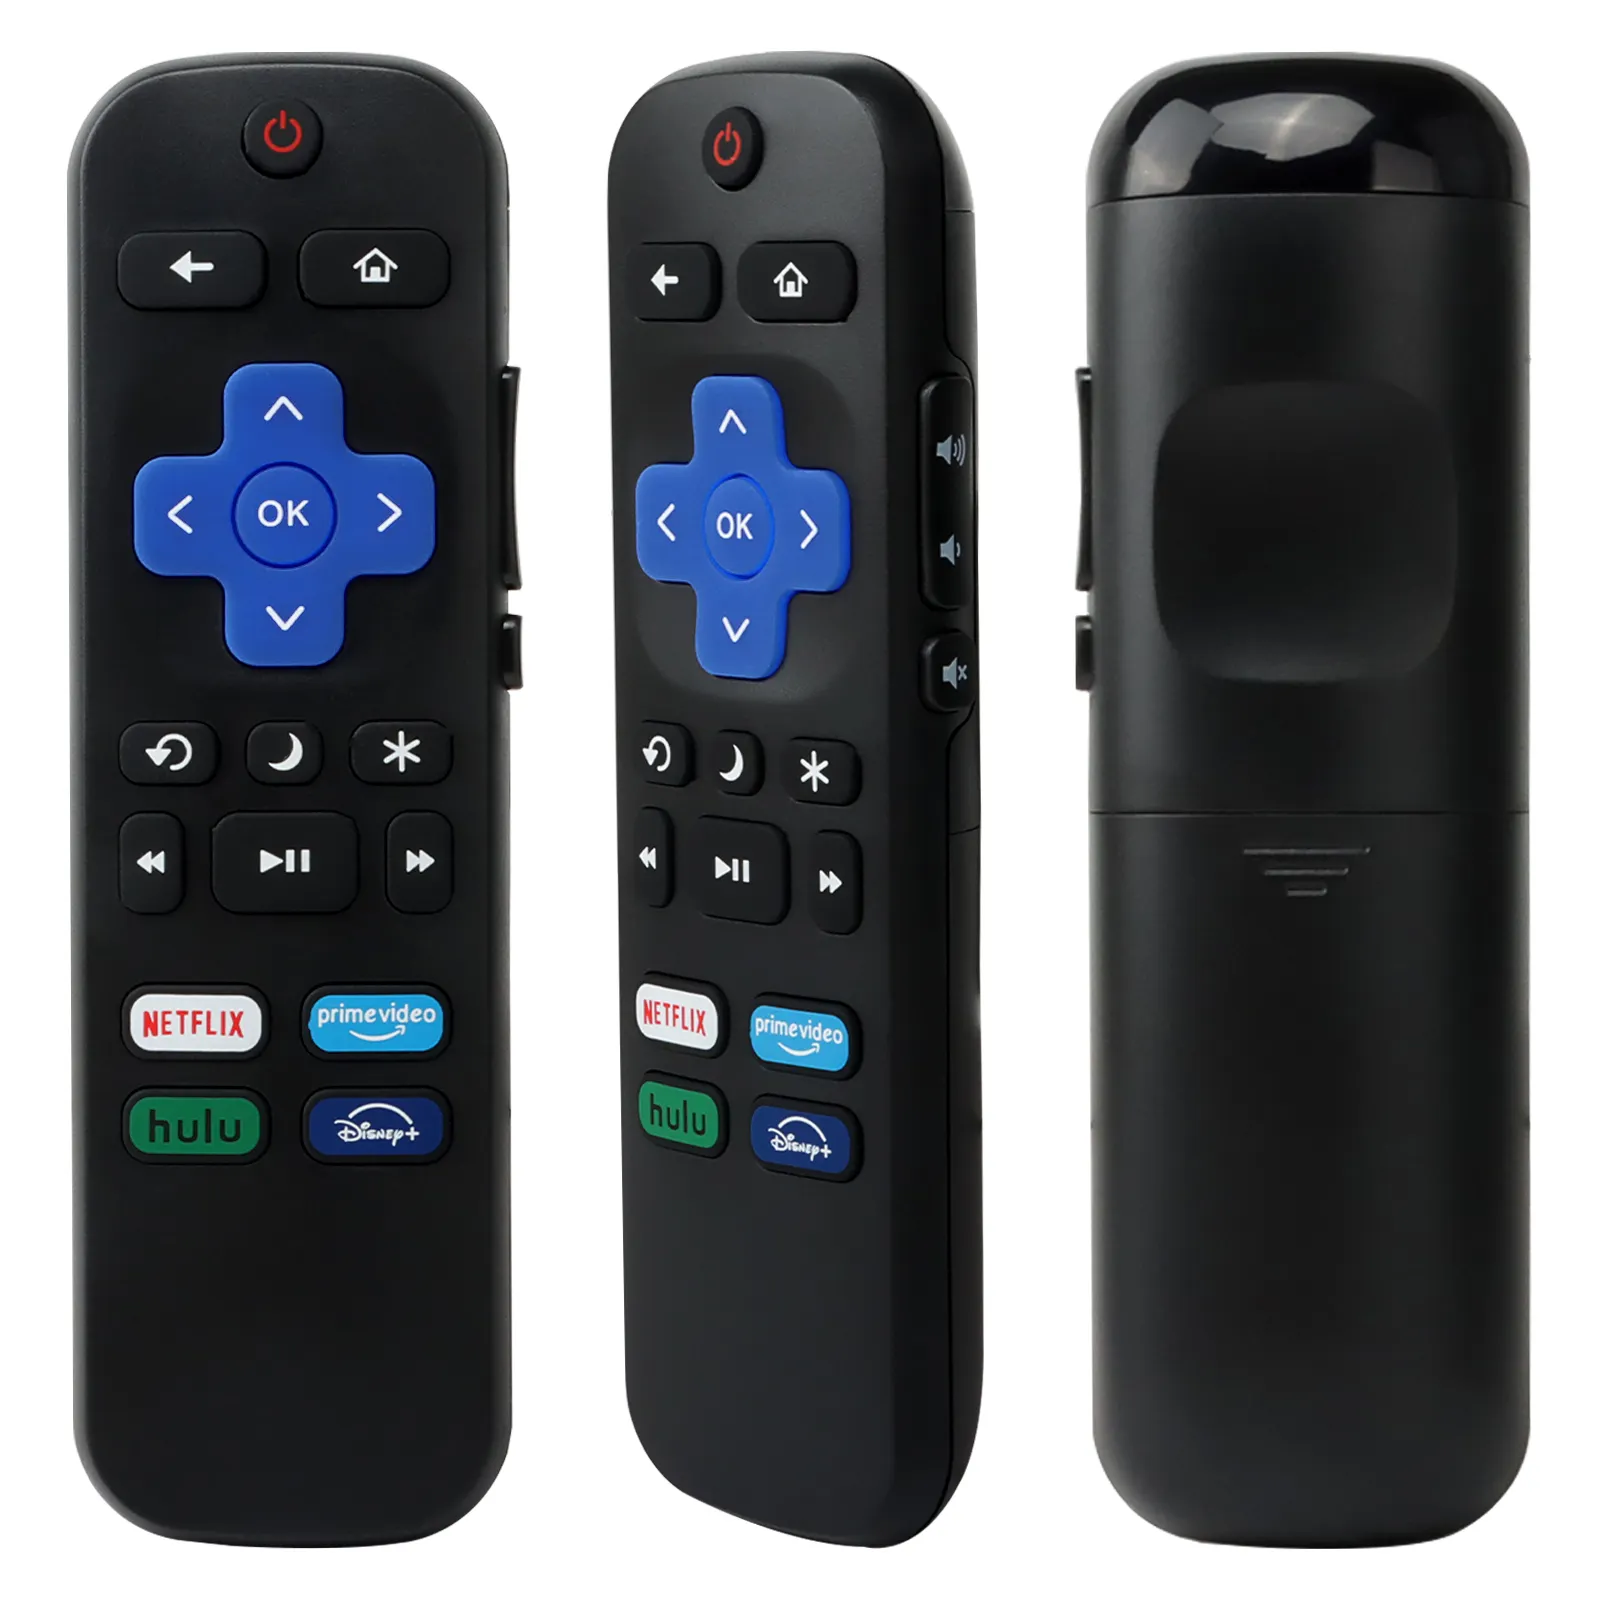 Control remoto para todos los televisores Roku, compatible con TCL Roku/Hisense Roku/Onn Roku Series Smart TV (no para Roku Stick y Box)